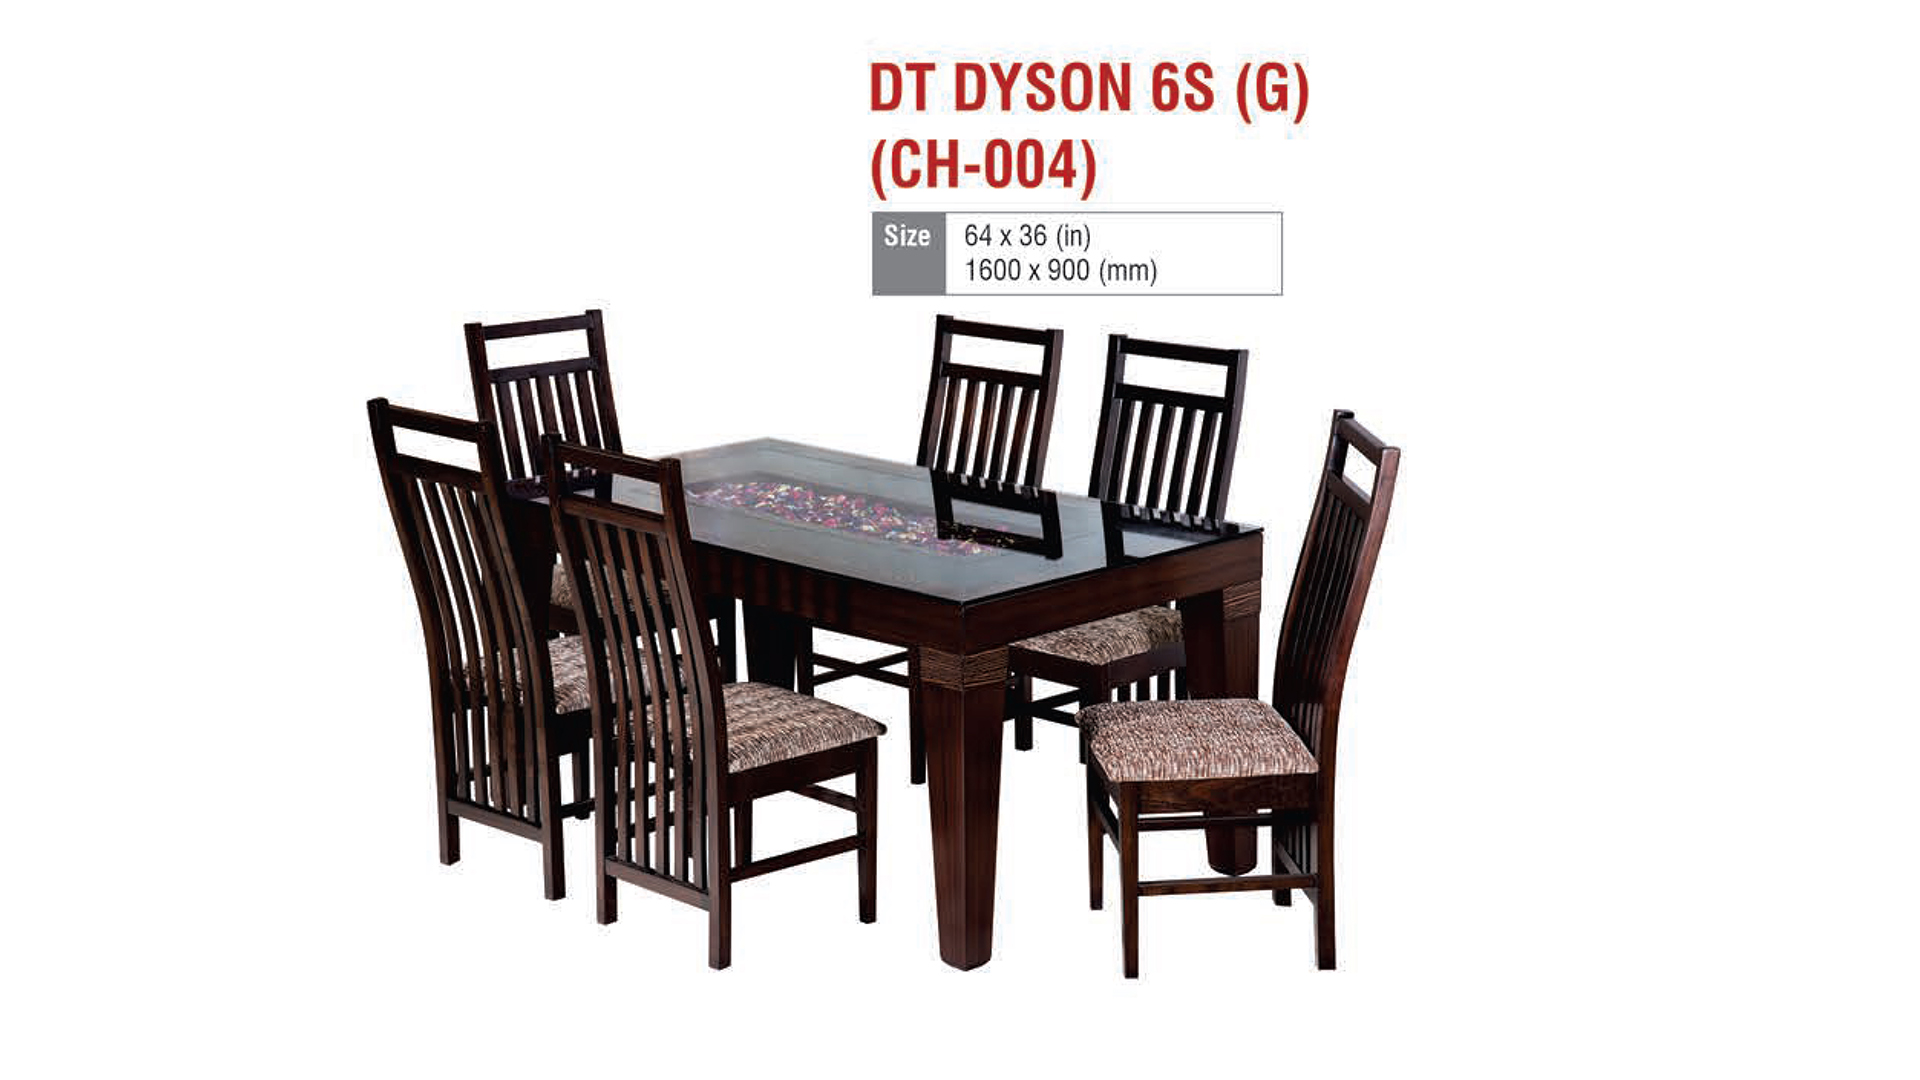 DT DYSON 6S (G) (CH-004)